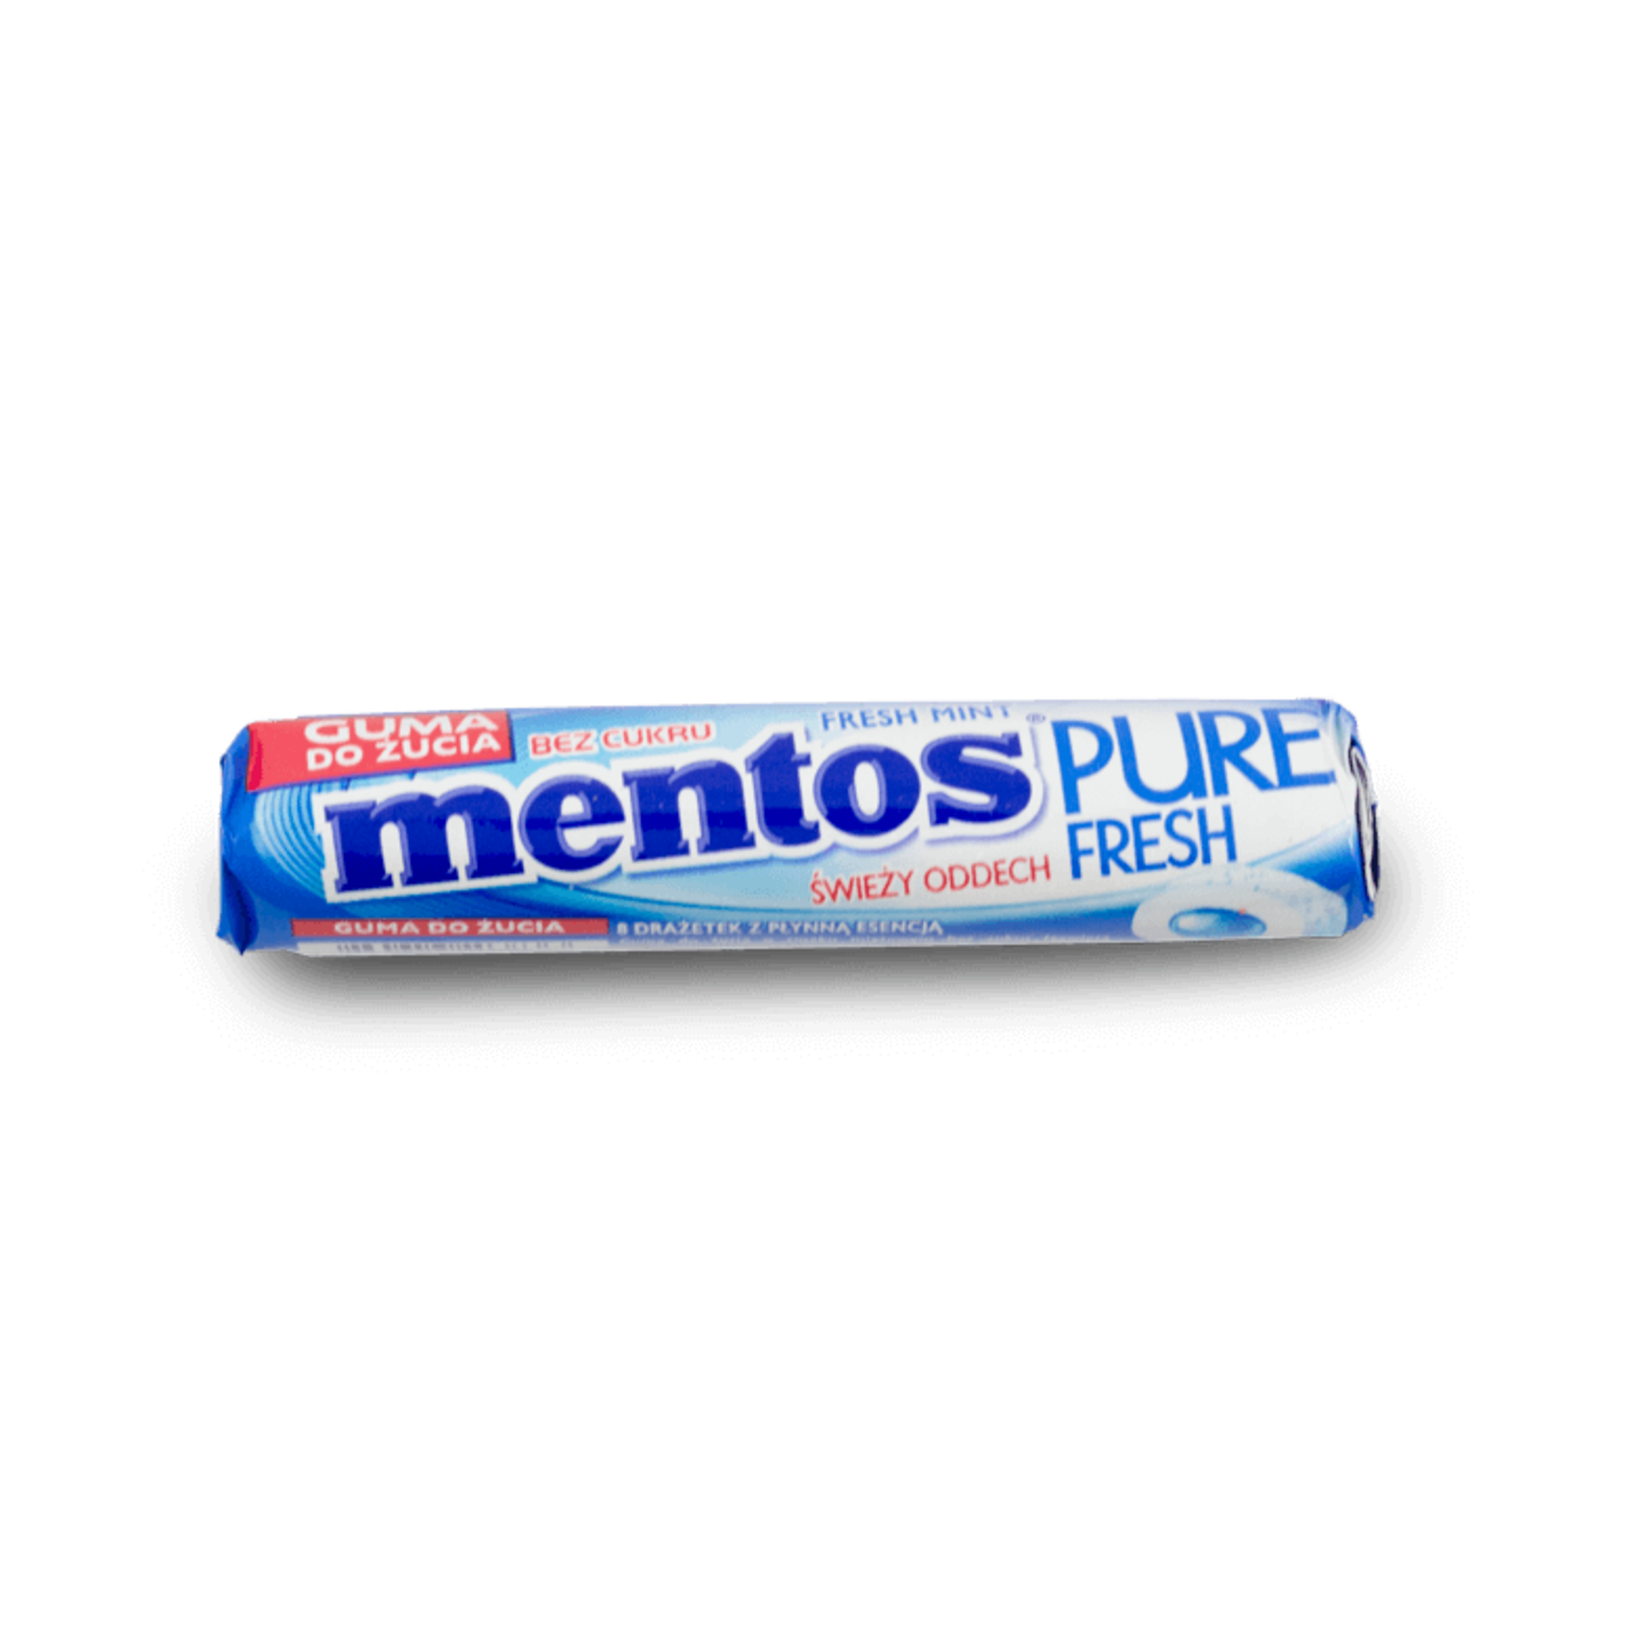 Mentos Mentos Pure Fresh Gum - Mint 15.5g